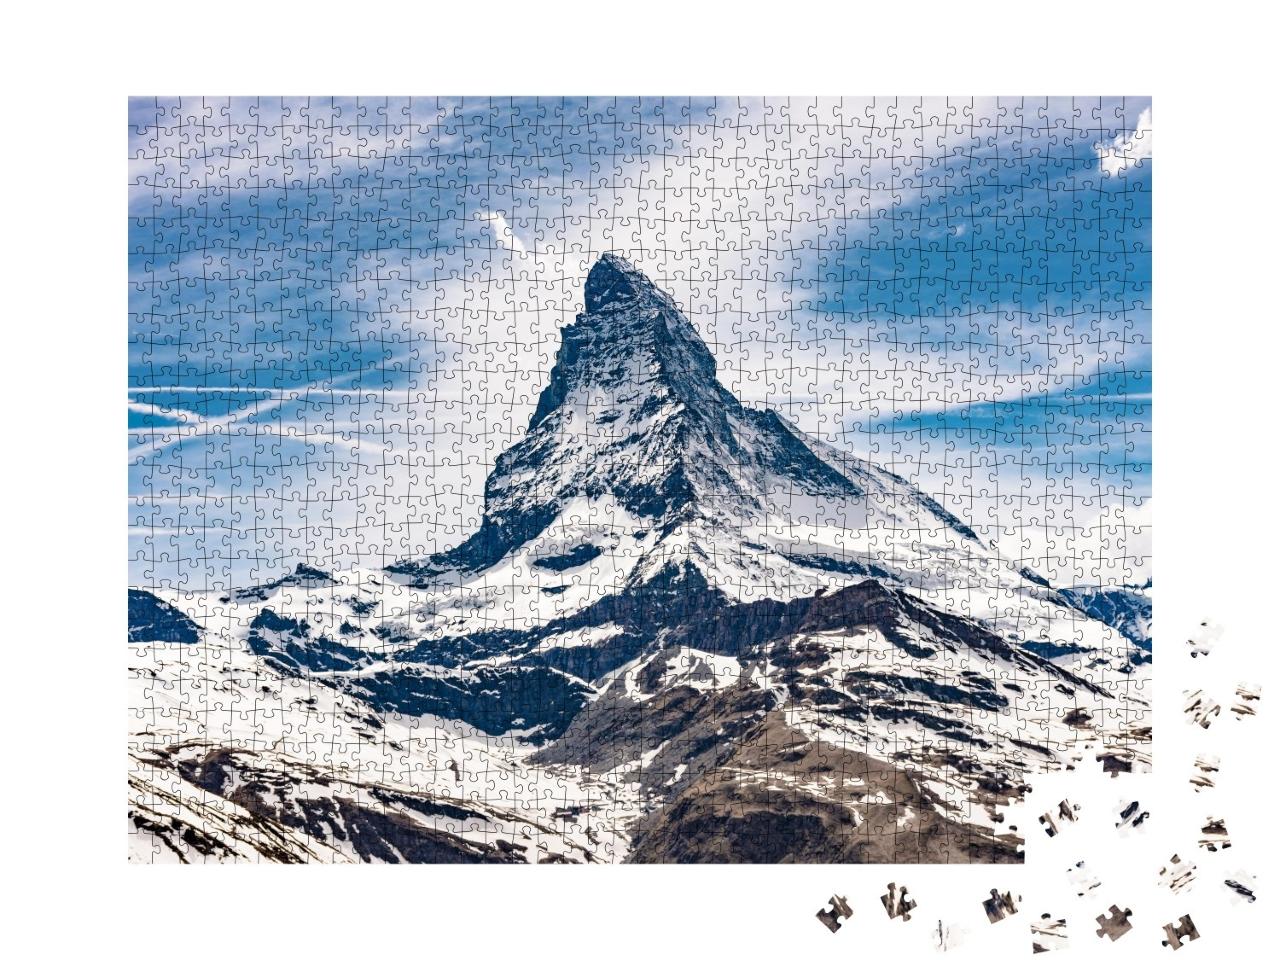 Puzzle de 1000 pièces « Matterhorn, Alpes suisses »